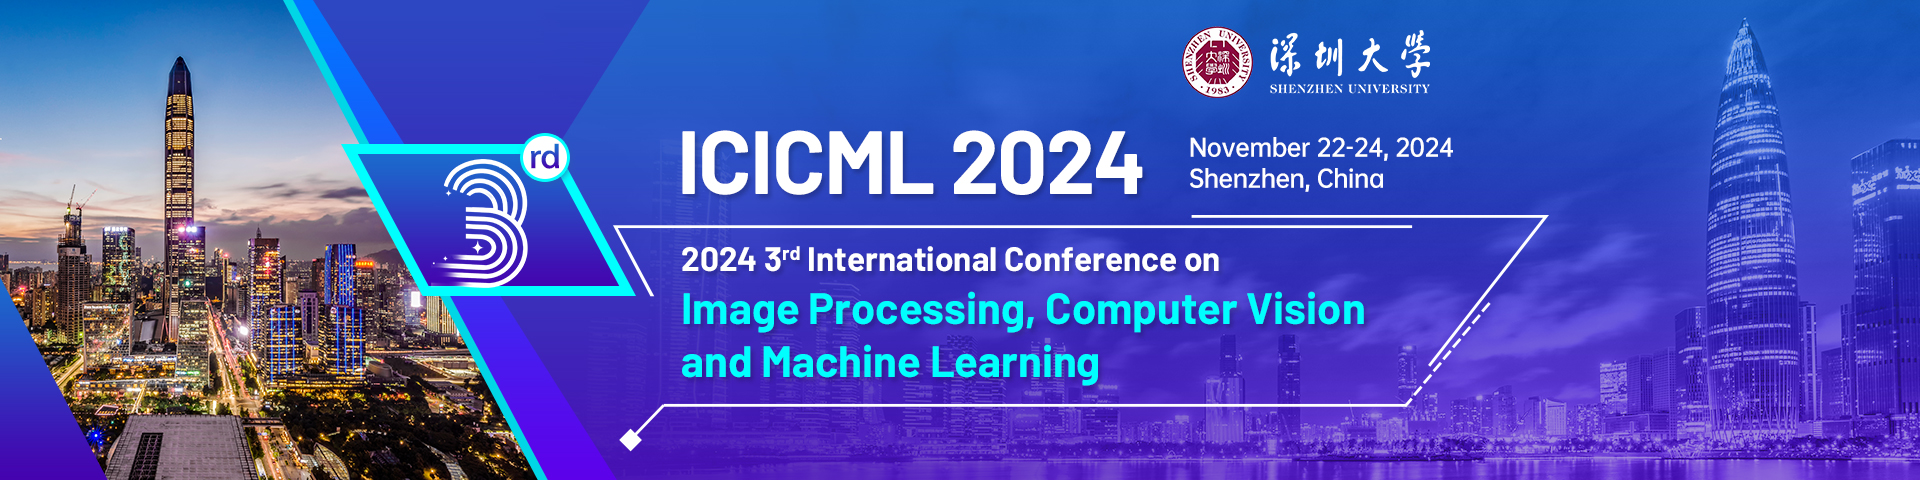 10月深圳-ICICML-2024-会议官网英文.jpg